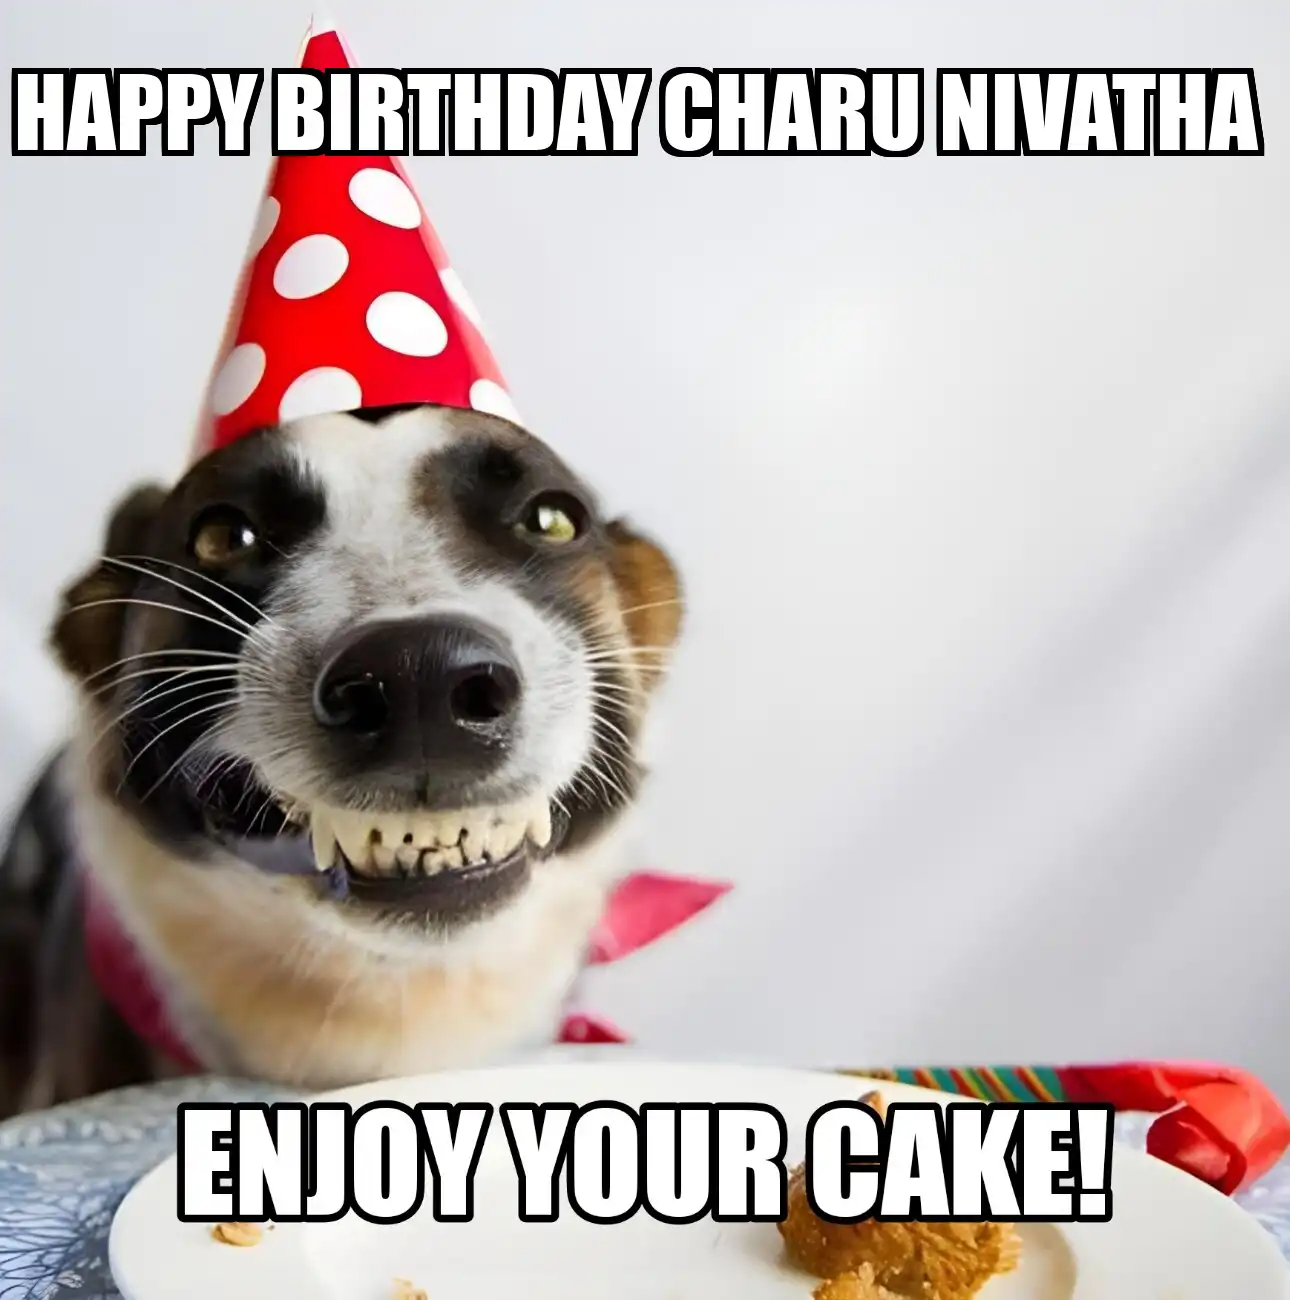 Happy Birthday Charu nivatha Enjoy Your Cake Dog Meme